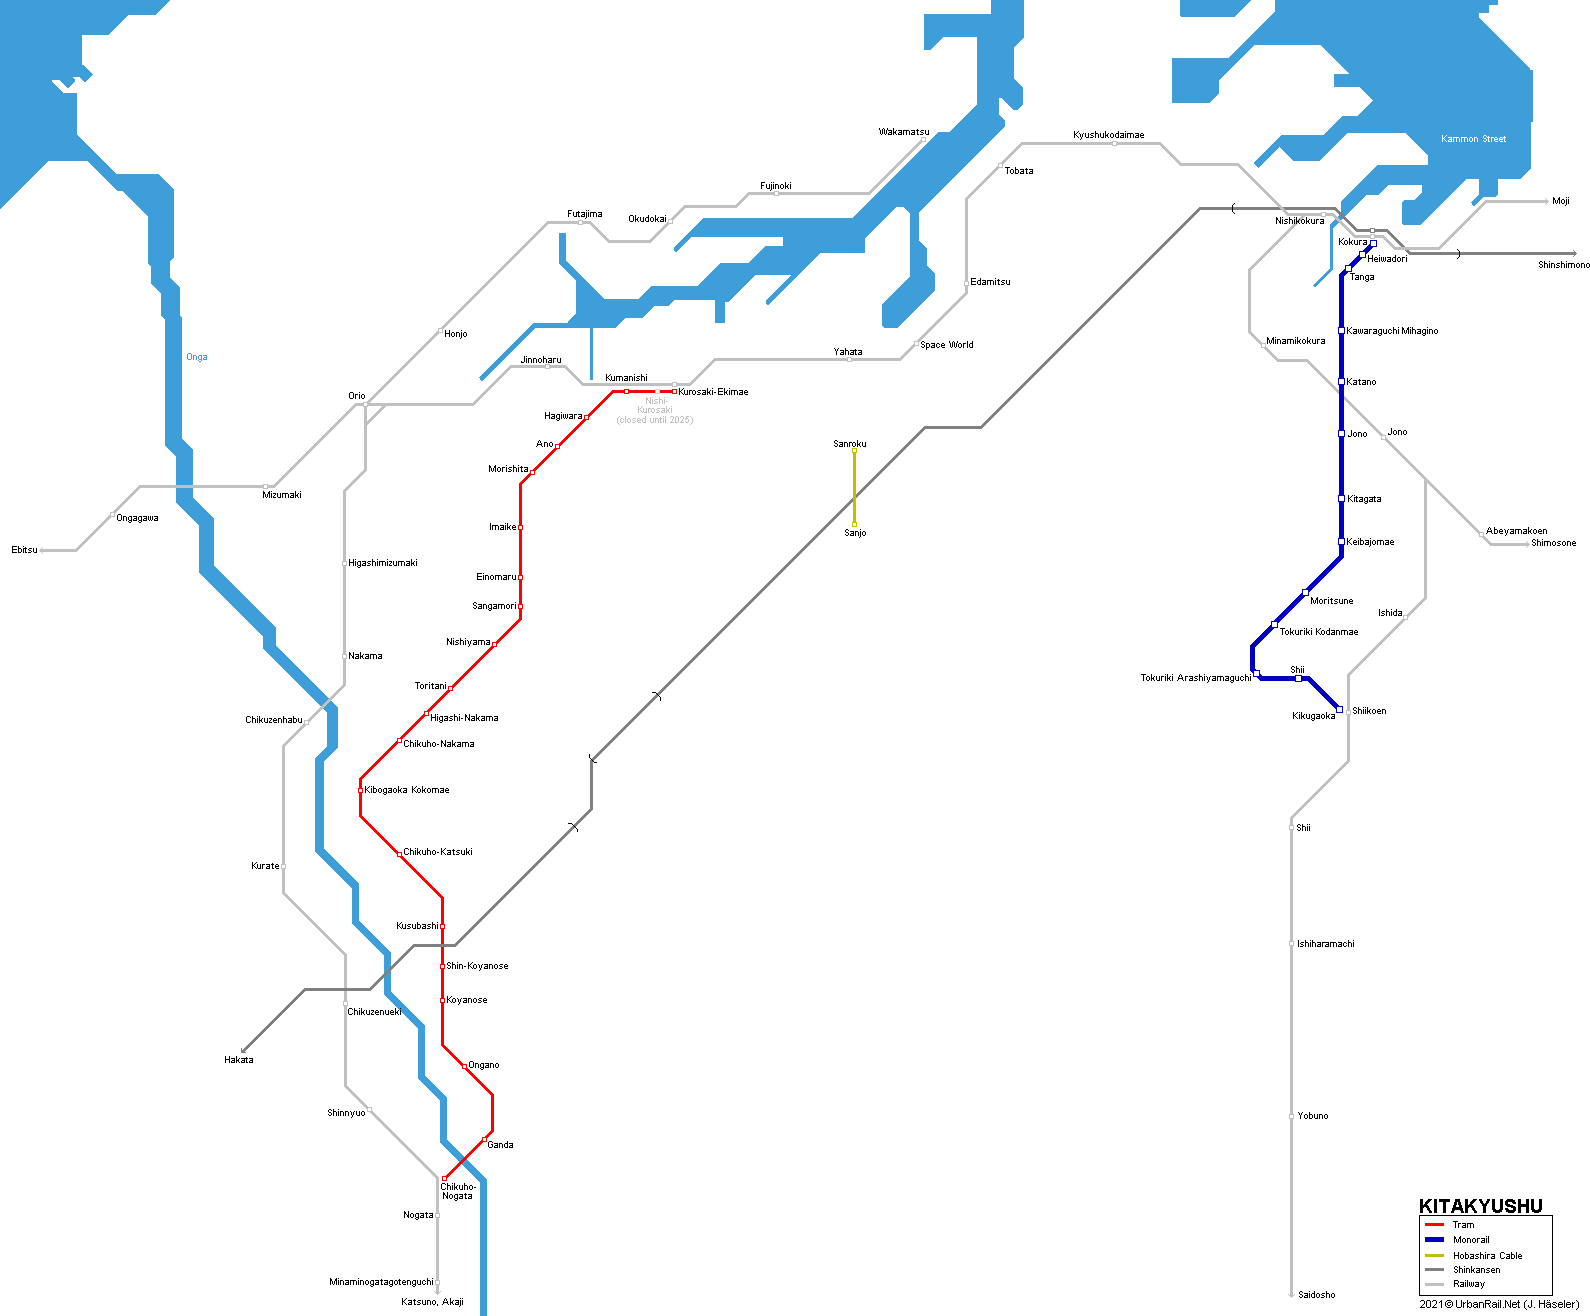 Kitakyushu Monorail and Tram Map